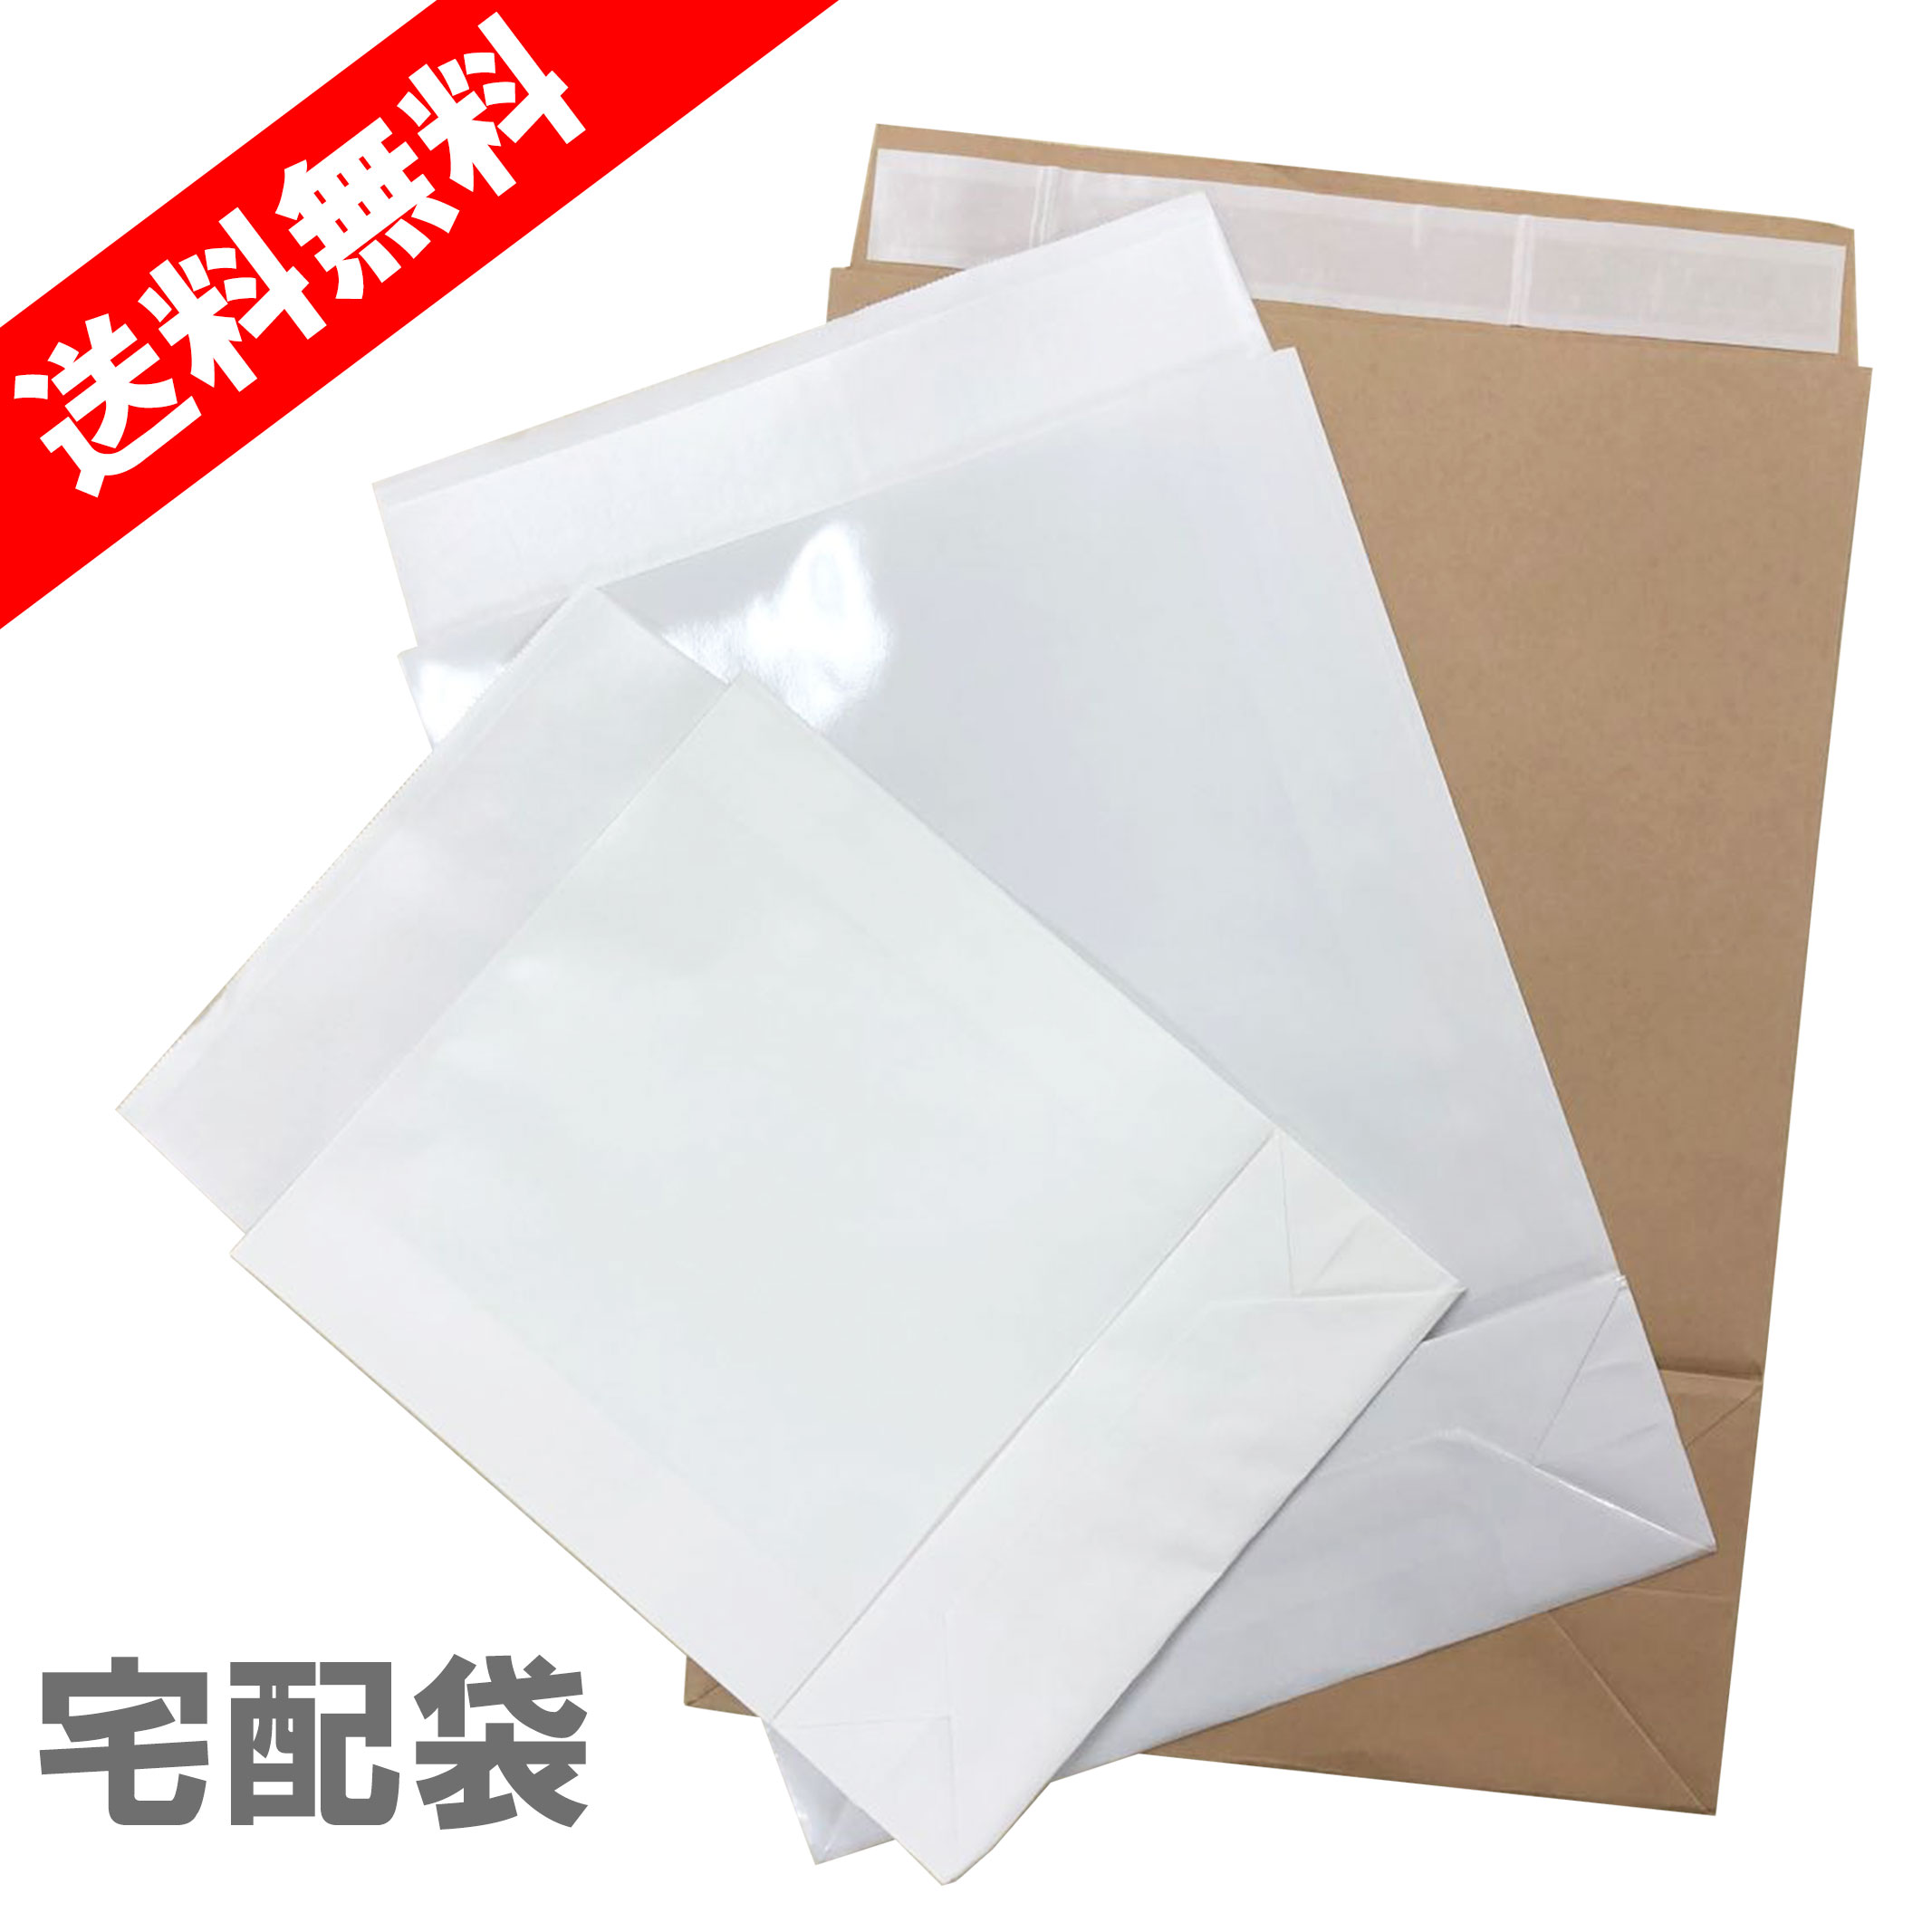 宅配袋 テープ付き 梱包用 クラフト 紙袋 茶色 白色 無地 宅配便 包装資材 業務用